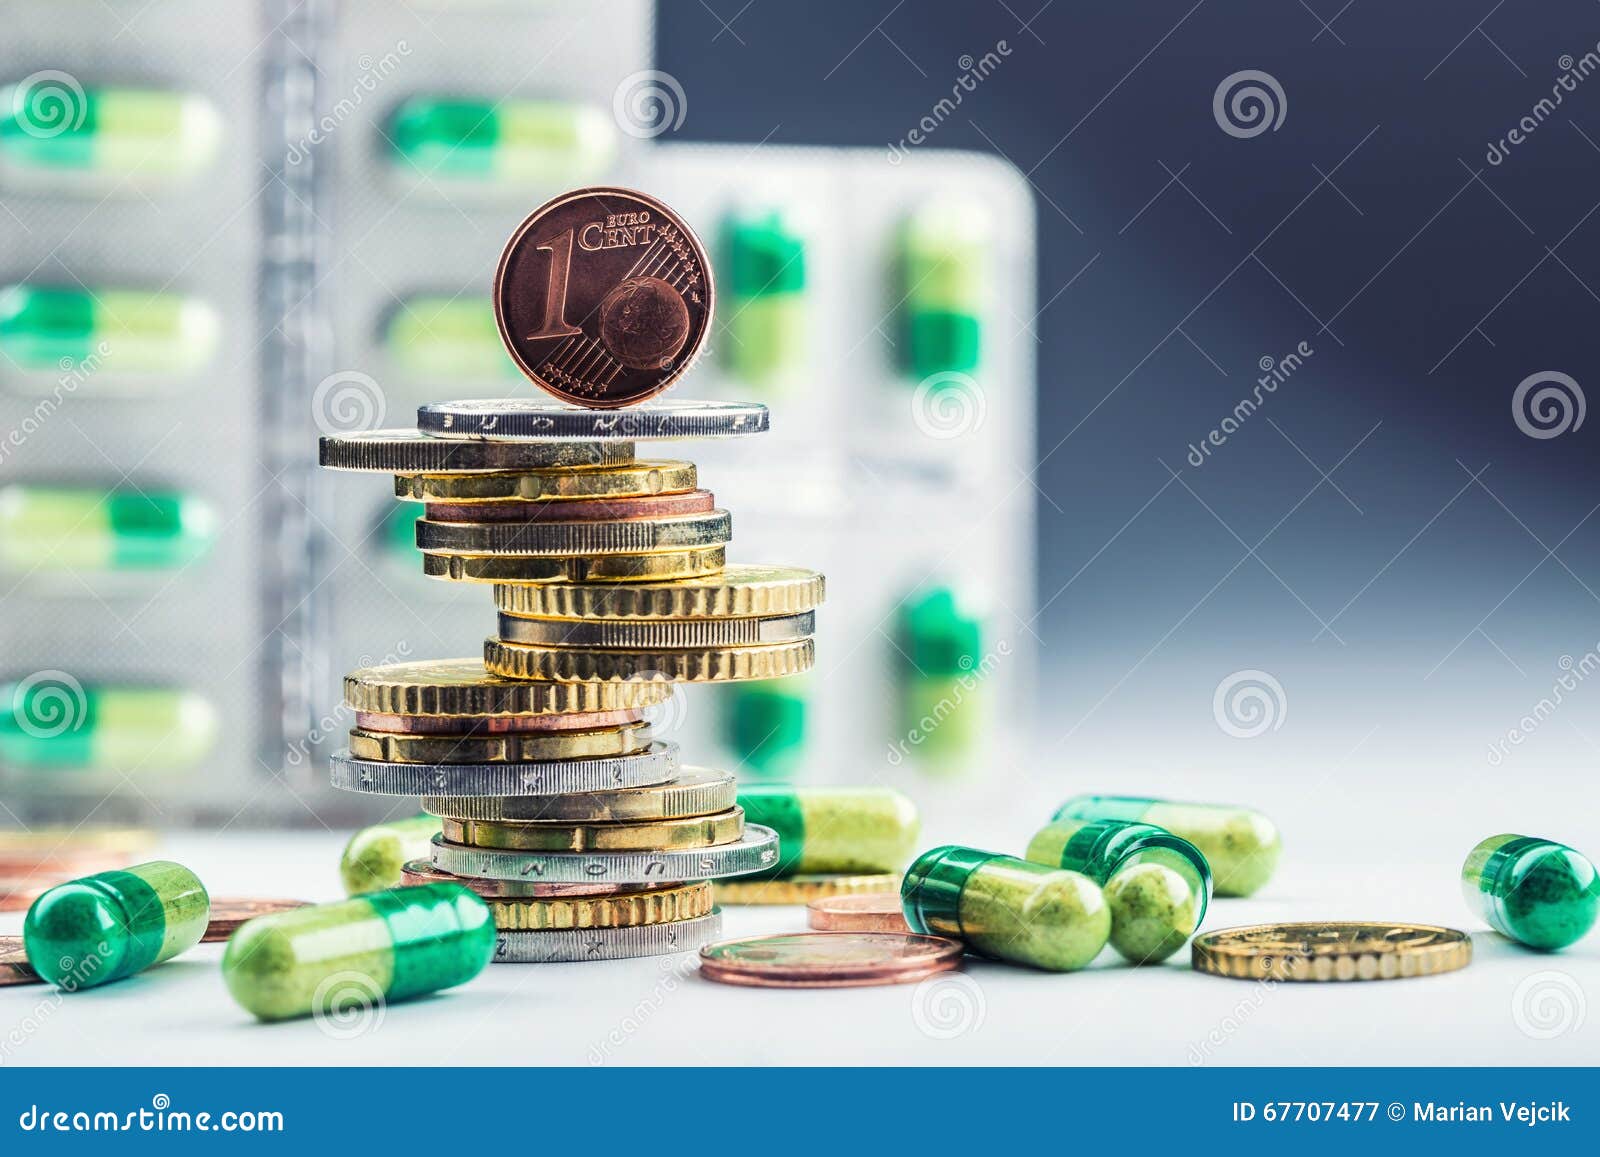 Dinheiro e medicamento do Euro Moedas e comprimidos do Euro Moedas empilhadas em se em posições diferentes e livremente em comprimidos em torno do dispersado Imagem tonificada